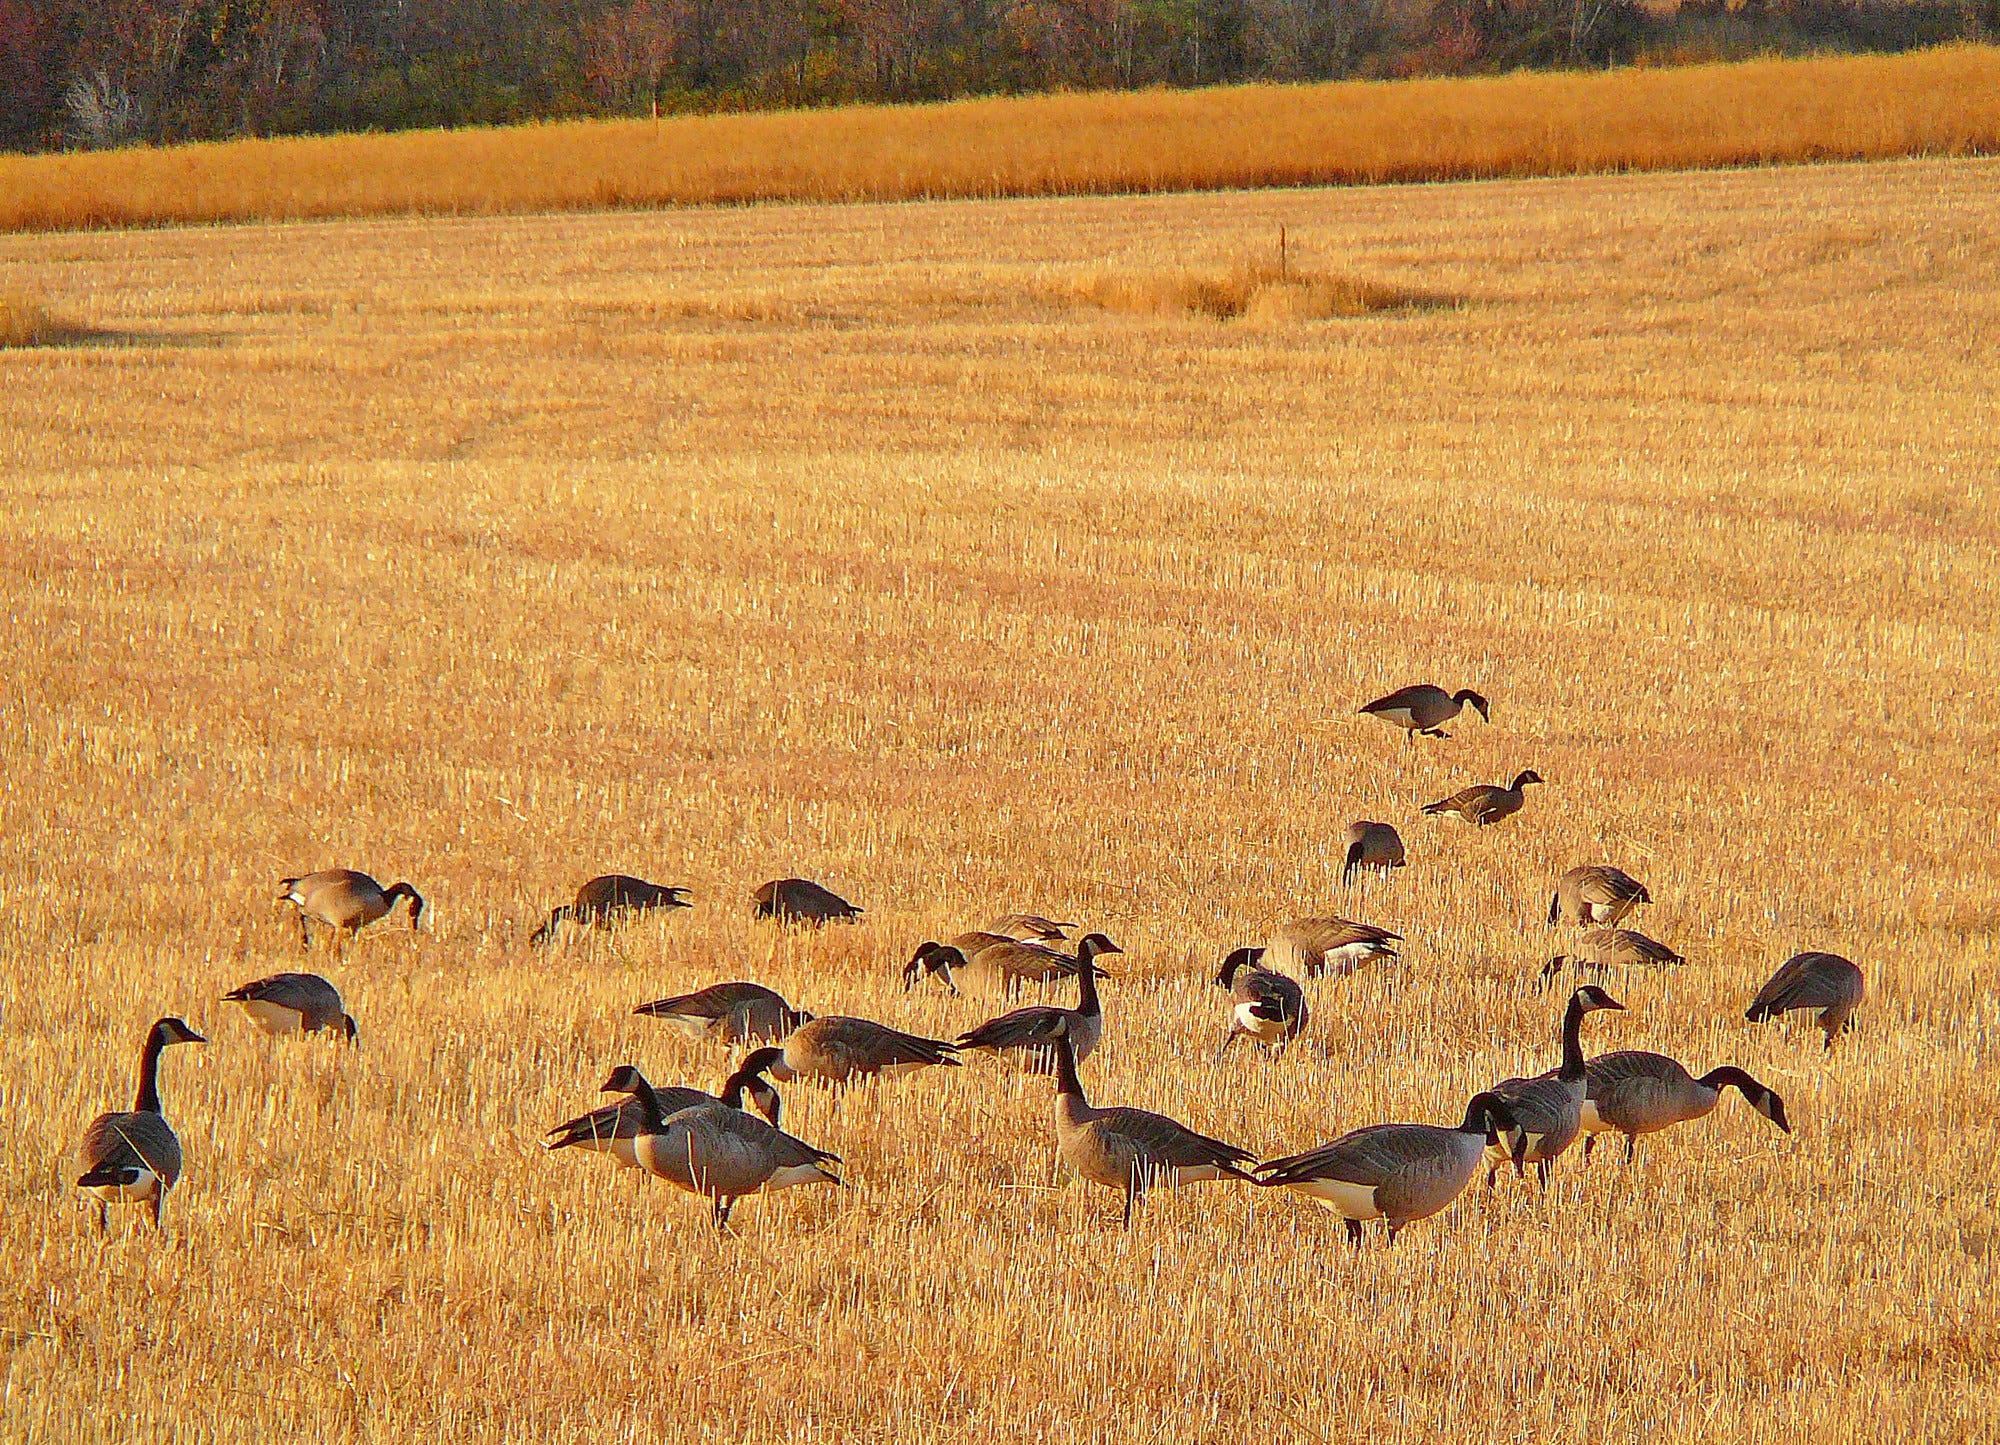 Canada geese feed in a farm field in Winthrop.